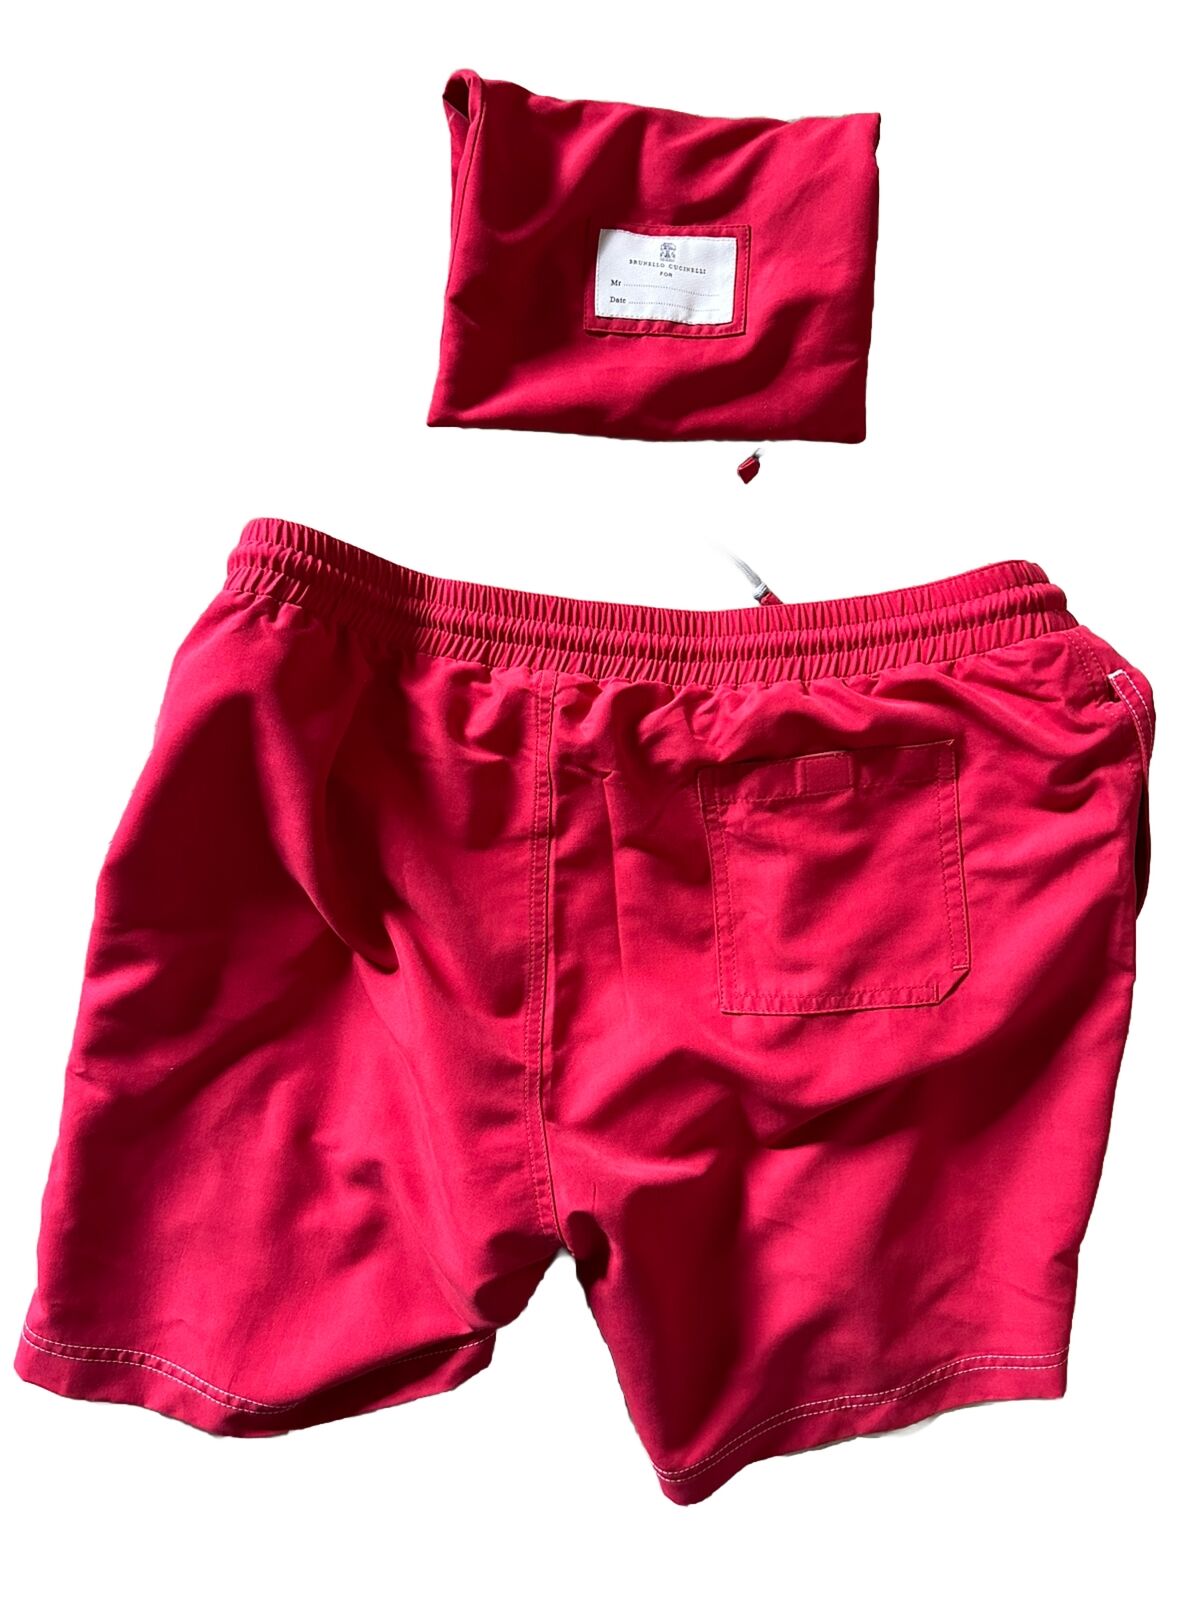 Neu mit Etikett: 550 $ Brunello Cucinelli Herren-Badeshorts mit Kordelzug, Farbe Rot, L, Italien